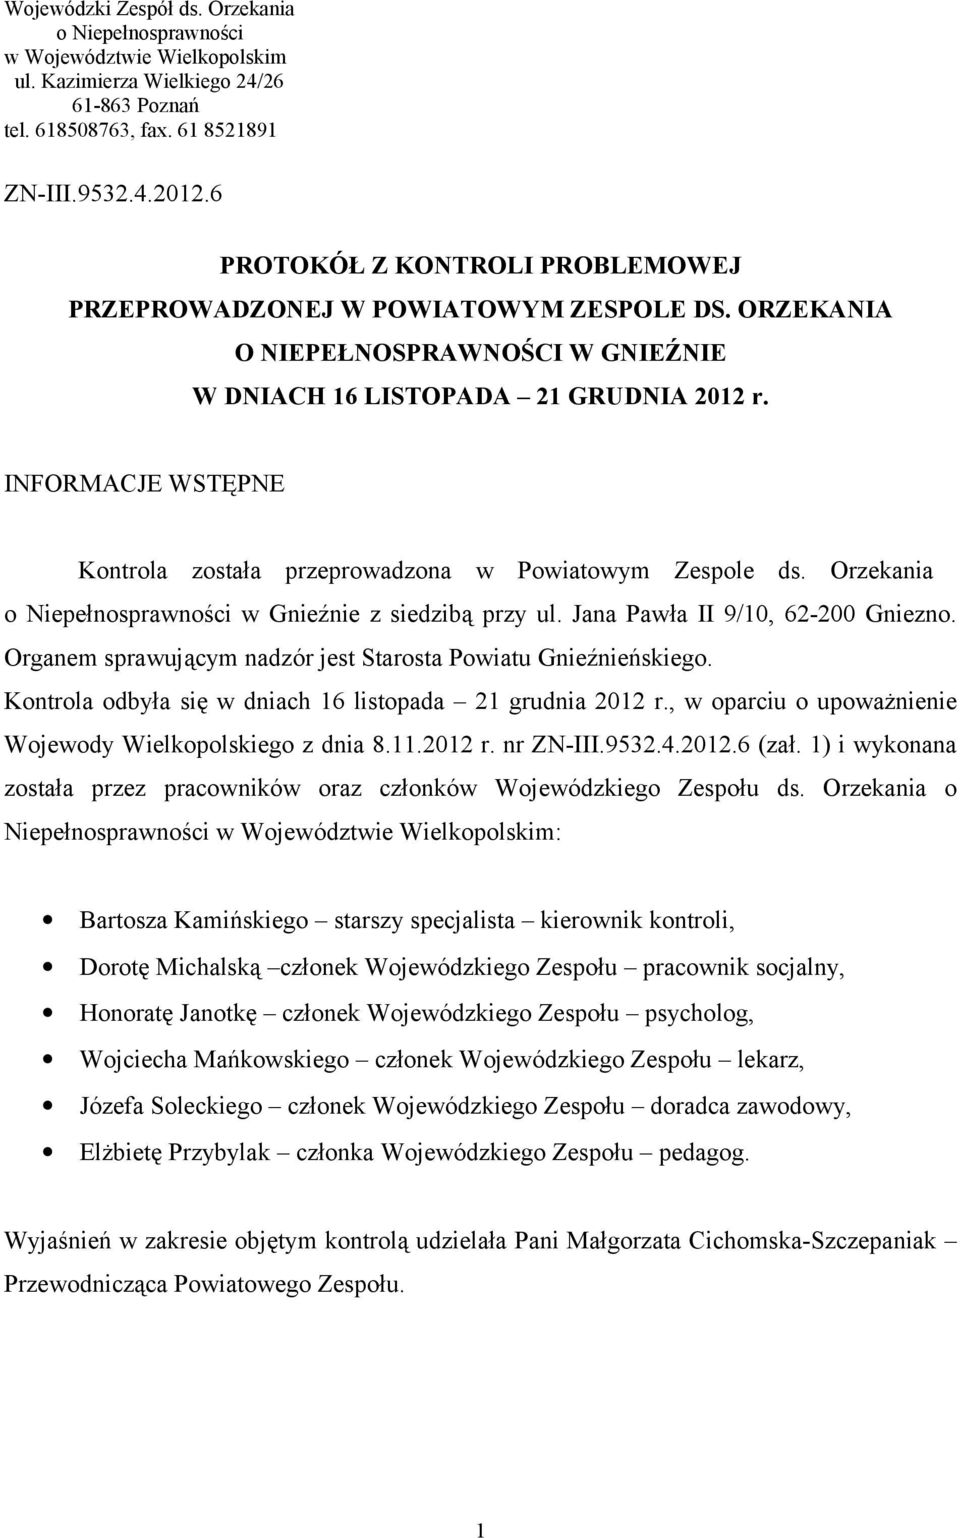 INFORMACJE WSTĘPNE Kontrola została przeprowadzona w Powiatowym Zespole ds. Orzekania o Niepełnosprawności w Gnieźnie z siedzibą przy ul. Jana Pawła II 9/10, 62-200 Gniezno.